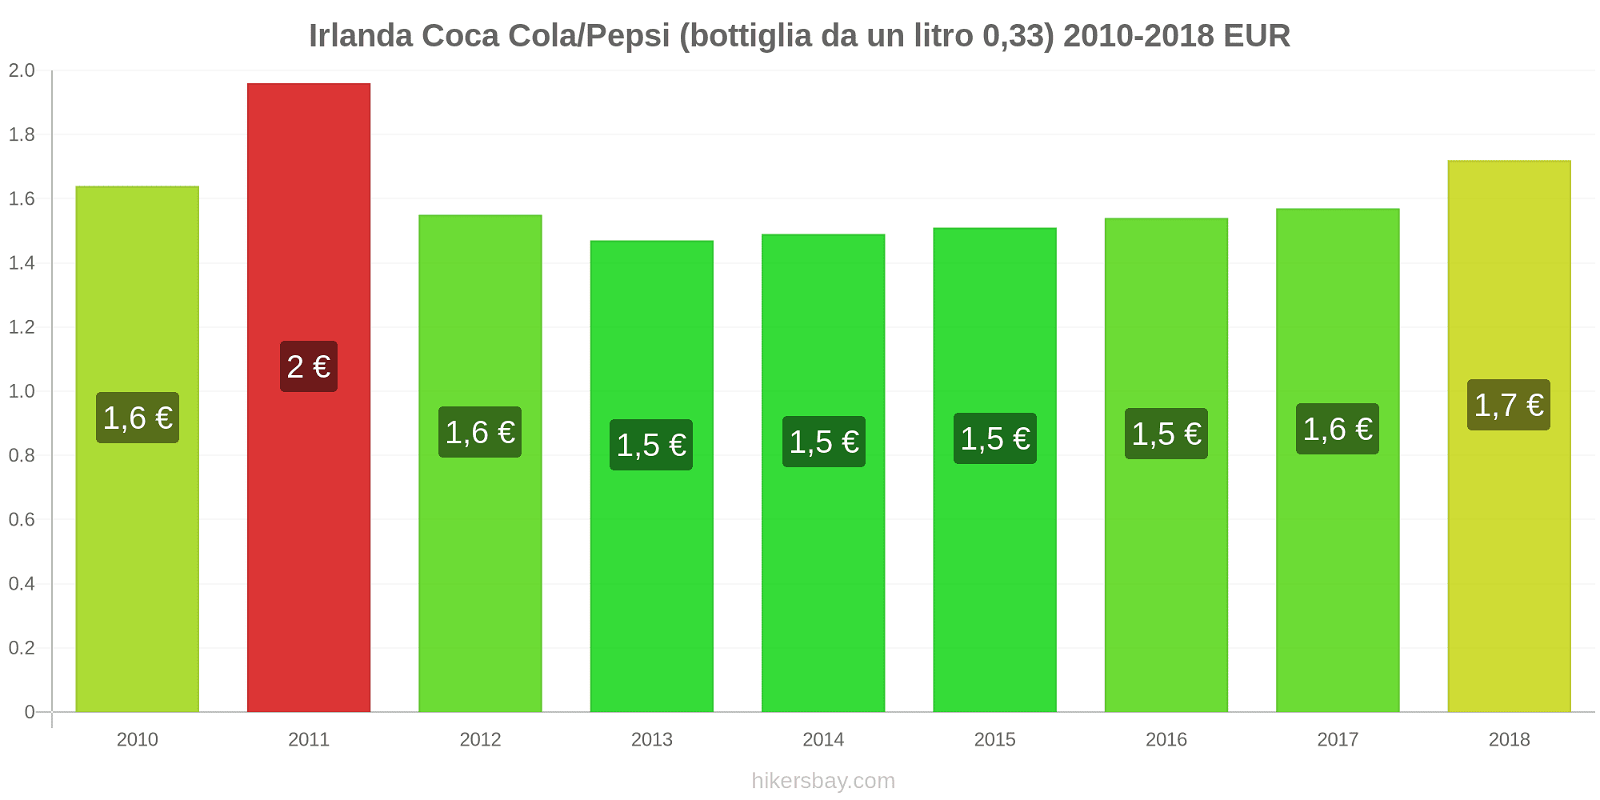 Irlanda cambi di prezzo Coca-Cola/Pepsi (bottiglia da 0.33 litri) hikersbay.com